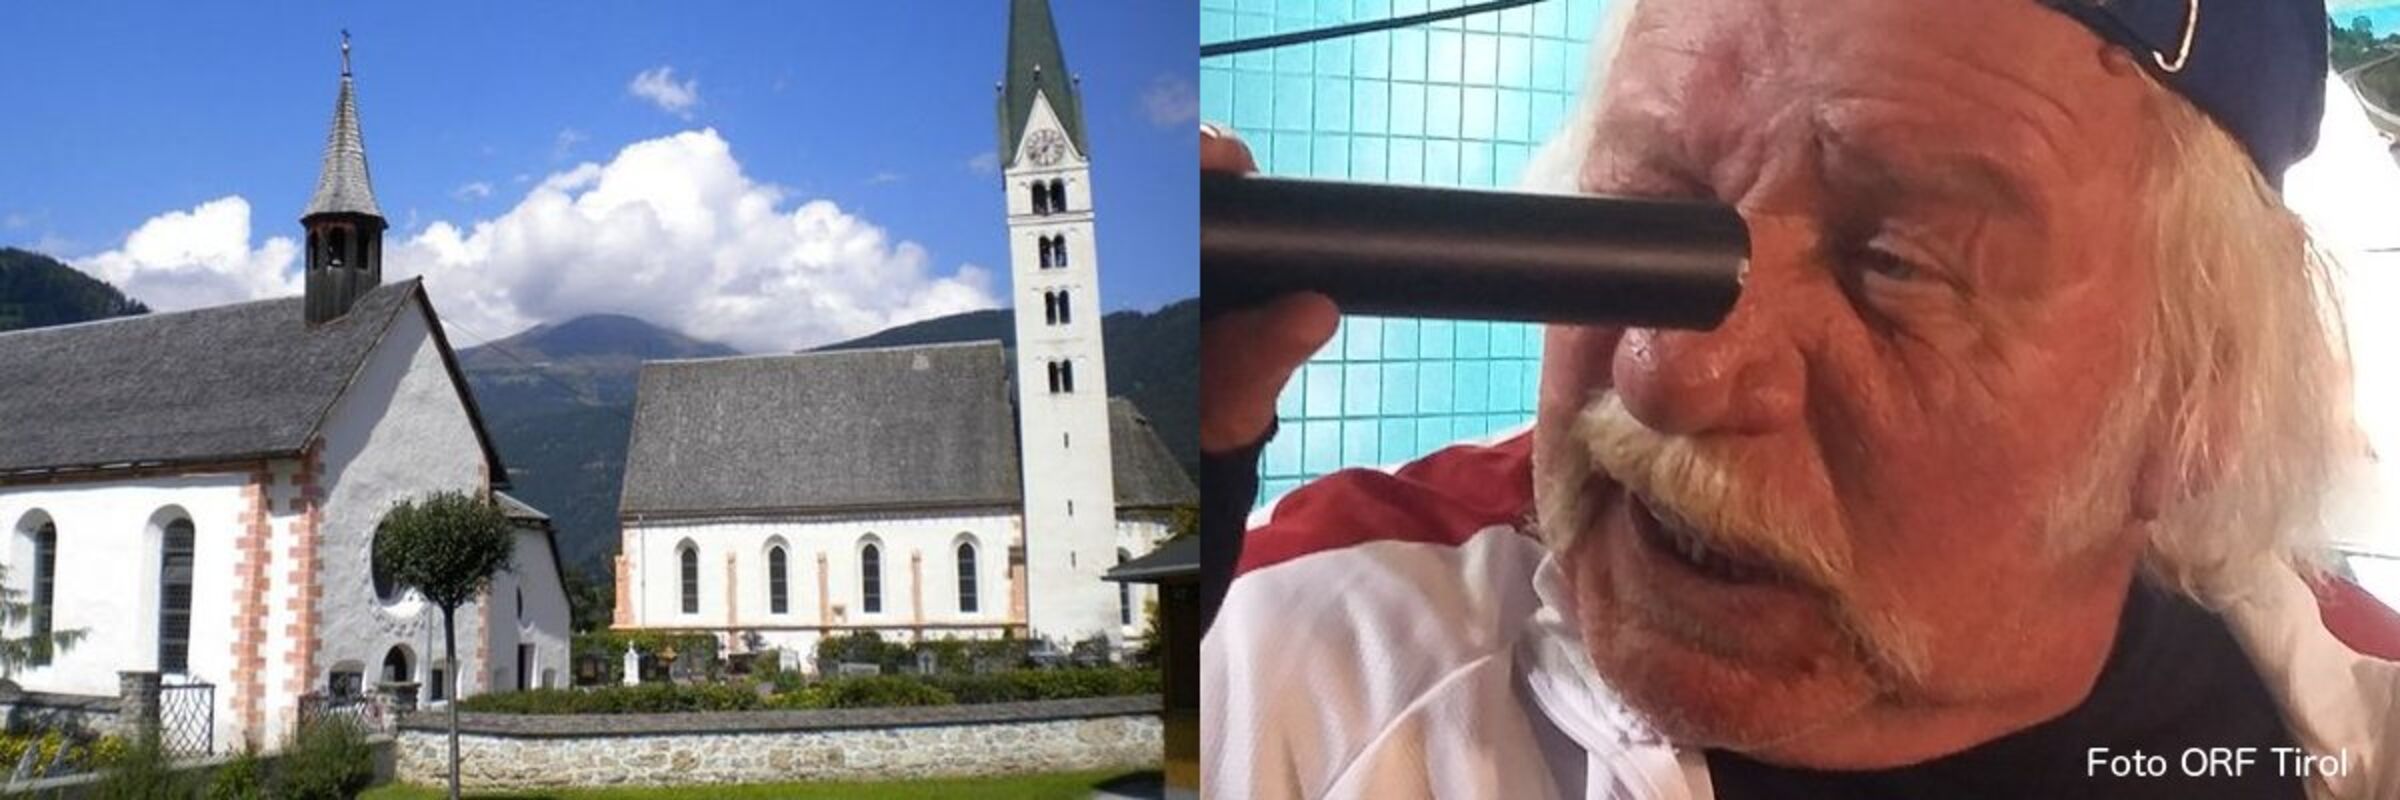 Herr Reindl und das Kirchendach (c) ORF Tirol